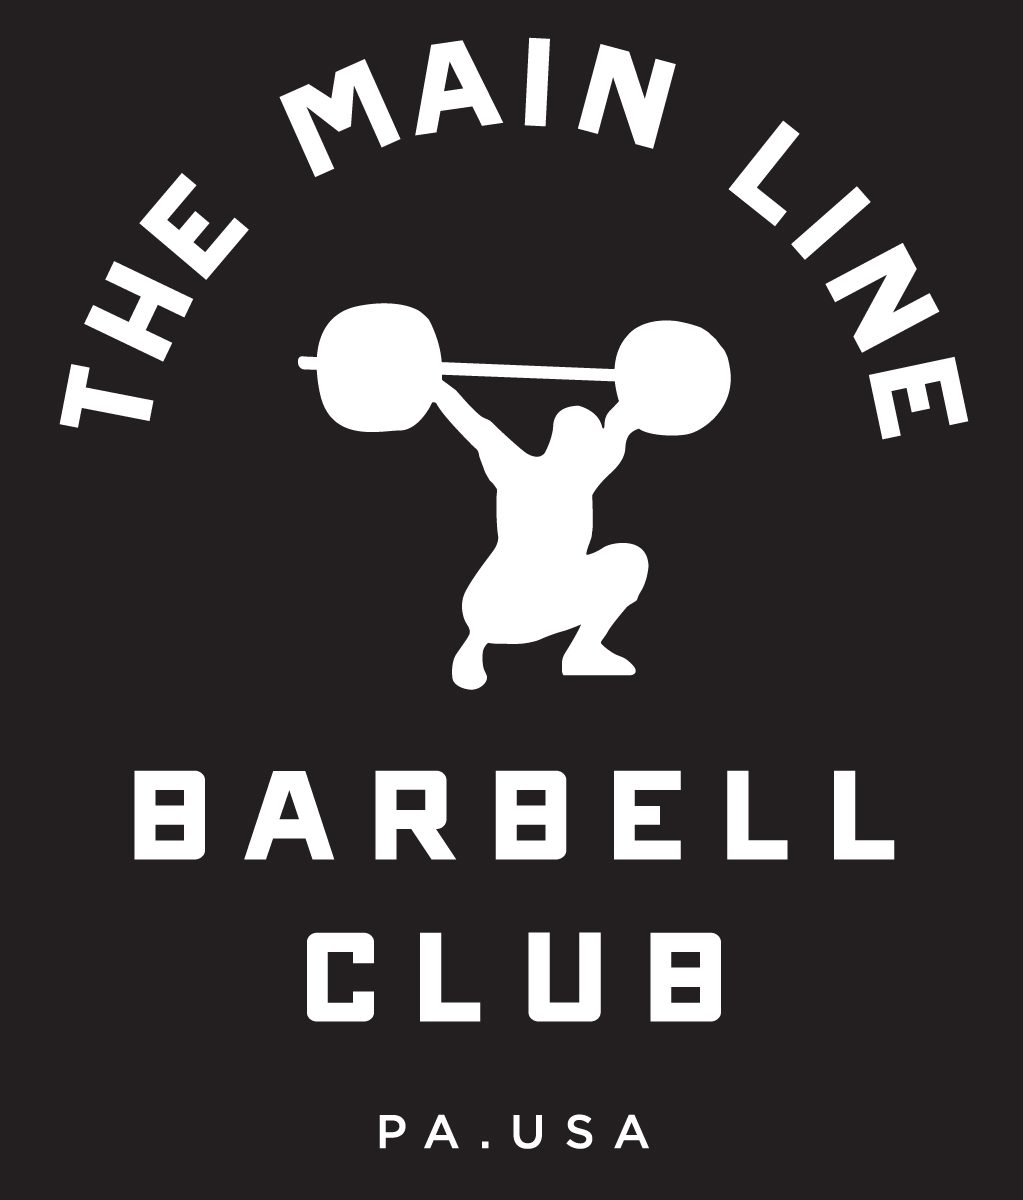 Week of 9.19.16 Barbell Club